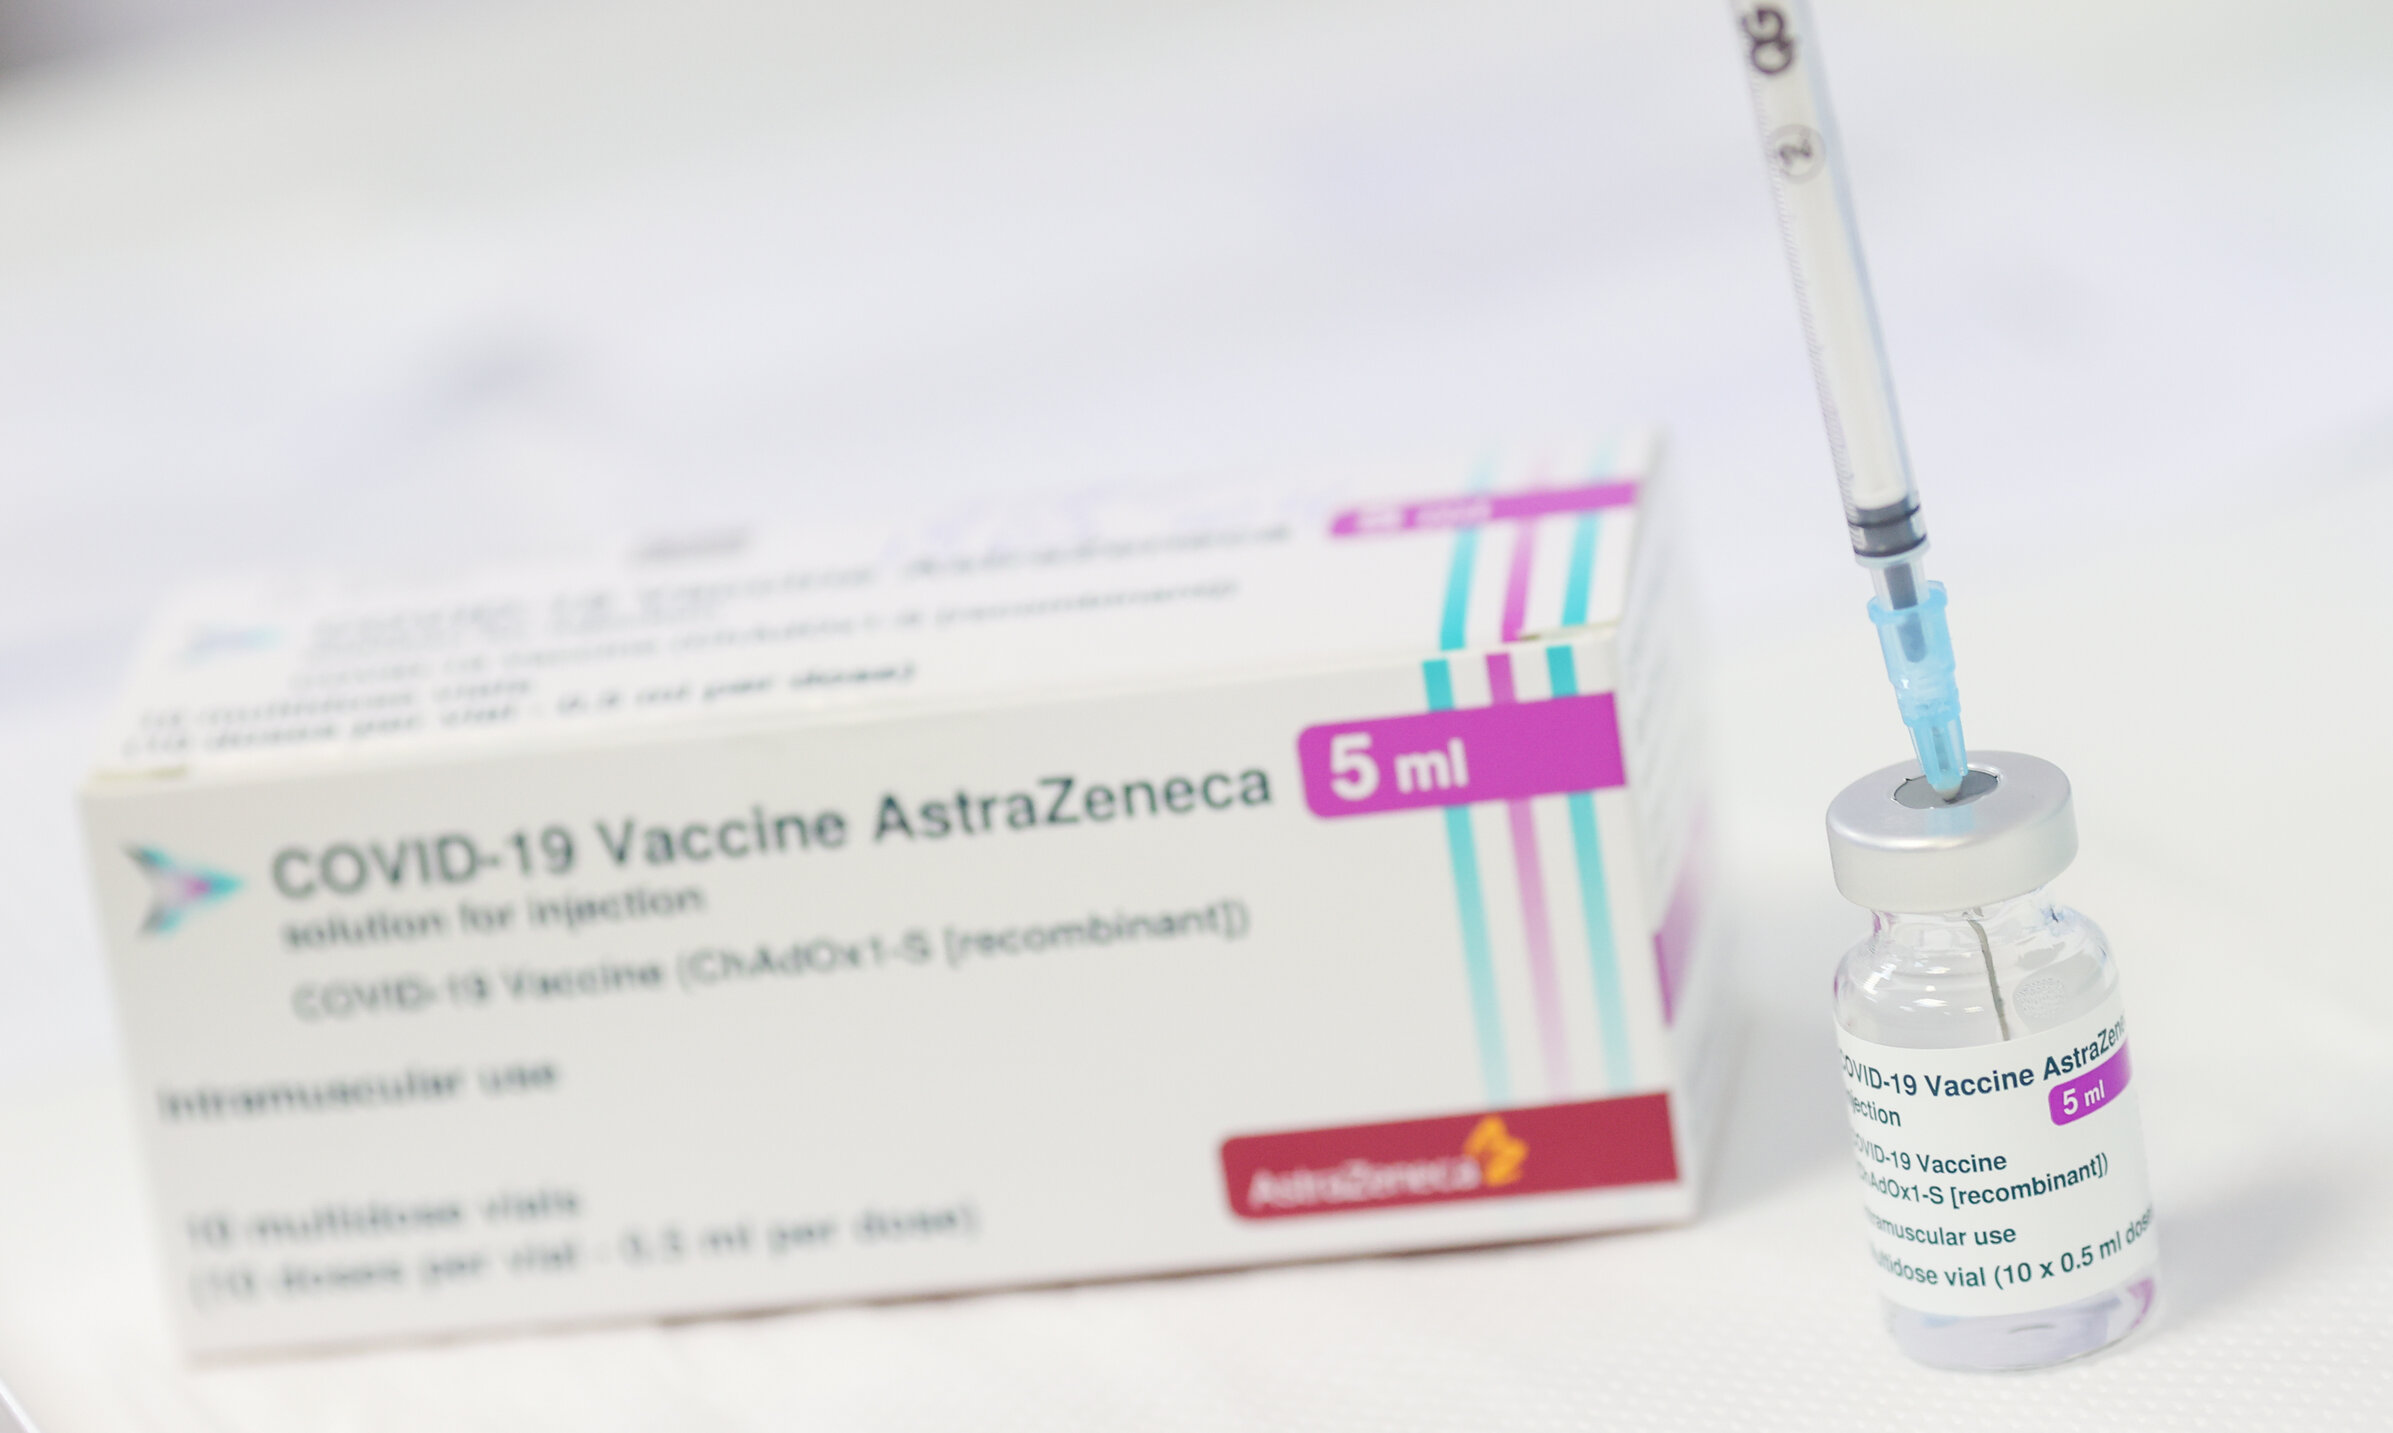 Au fost găsite indicii care ar putea explica legătura dintre cheagurile de sânge și vaccinul AstraZeneca